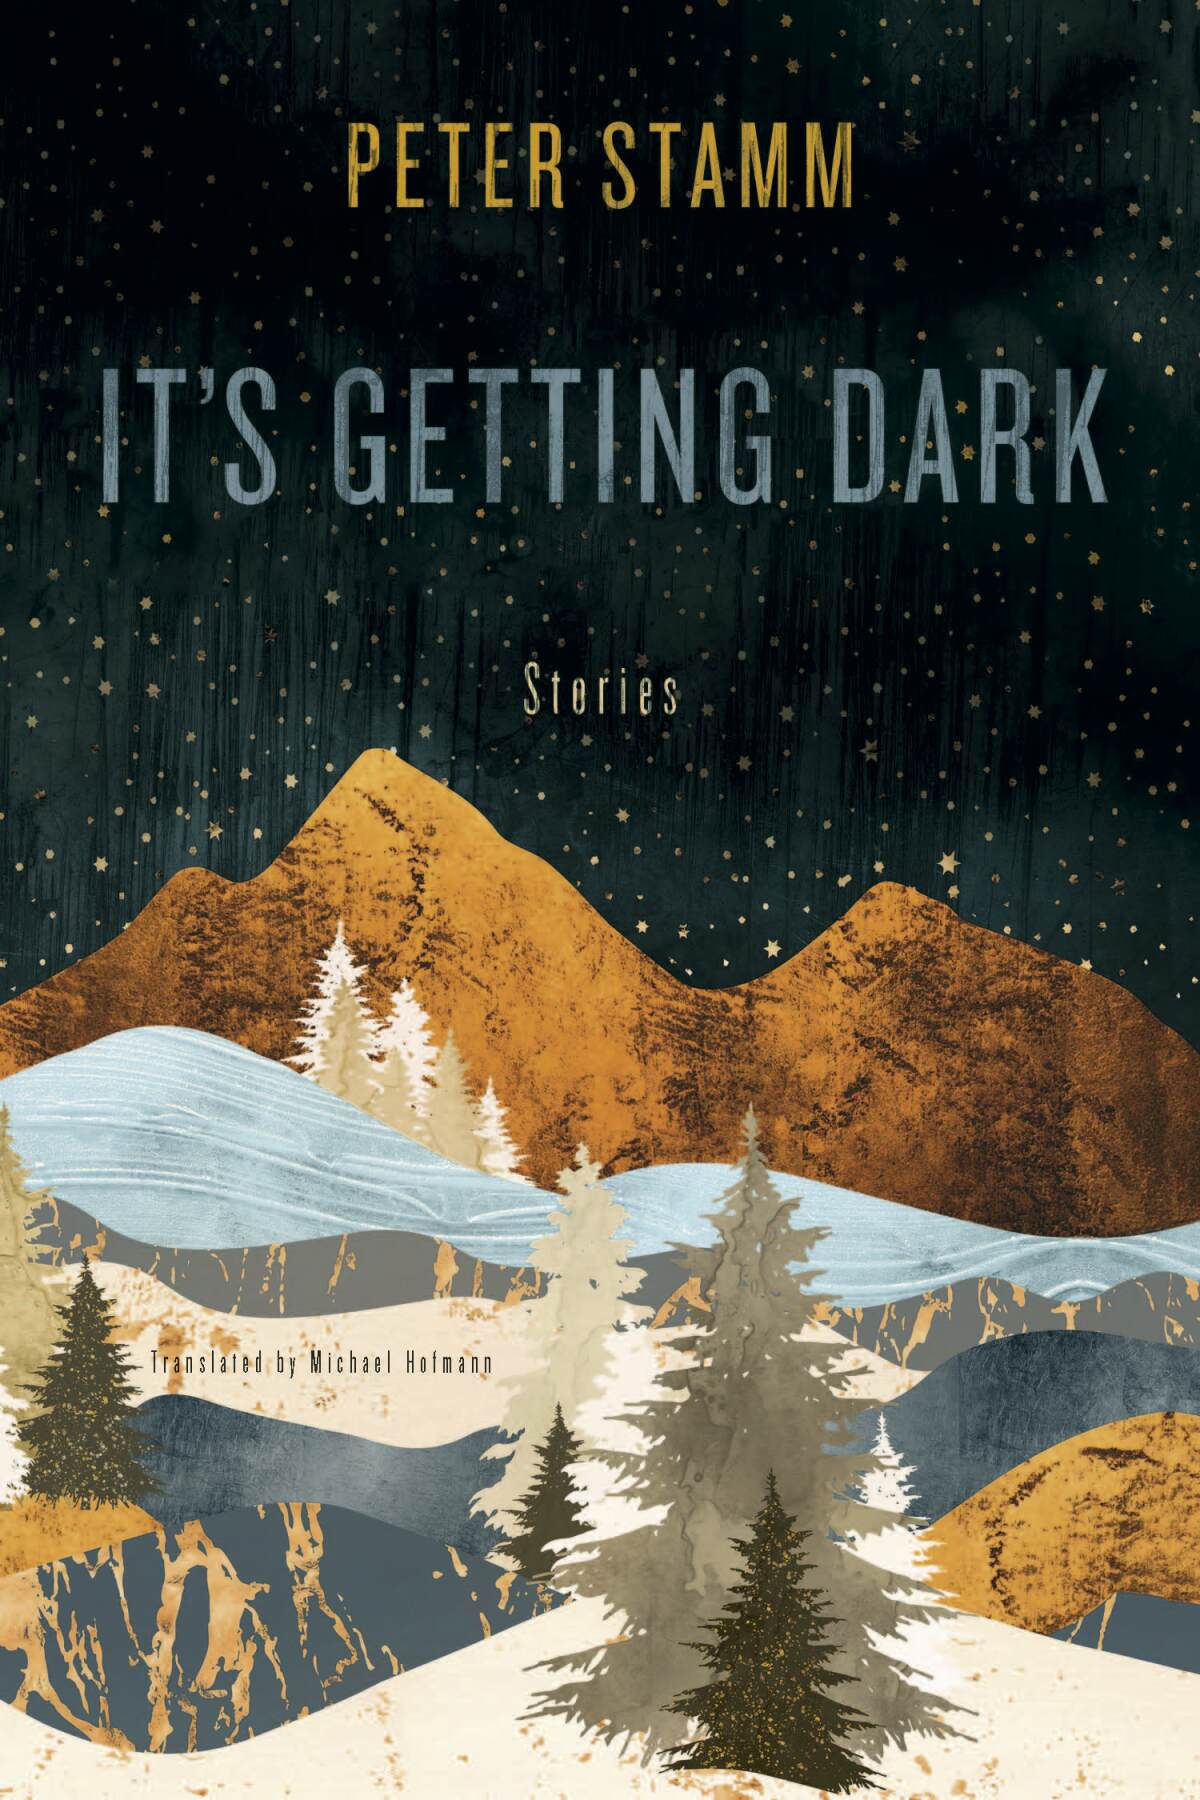 "It's Getting Dark," by Peter Stamm